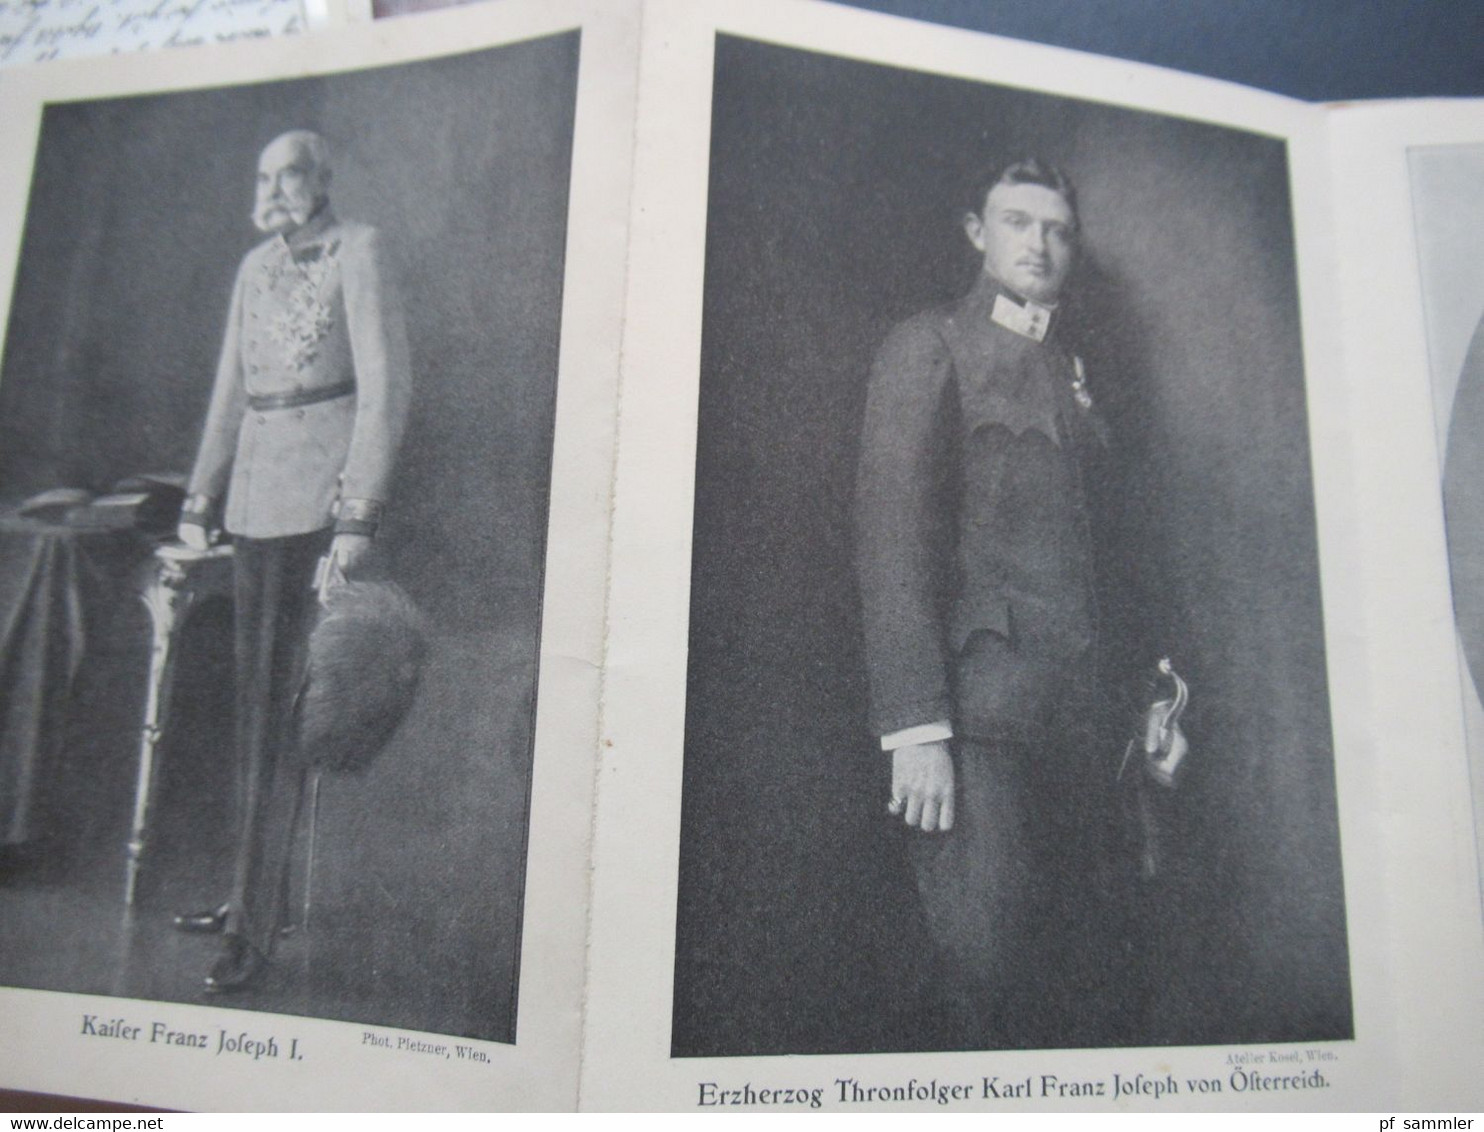 Leporello Die Führer Deutschlands und Österreich-Ungarns im Weltkriege 1914 mit 26 illustrierten Bildern / Portraits